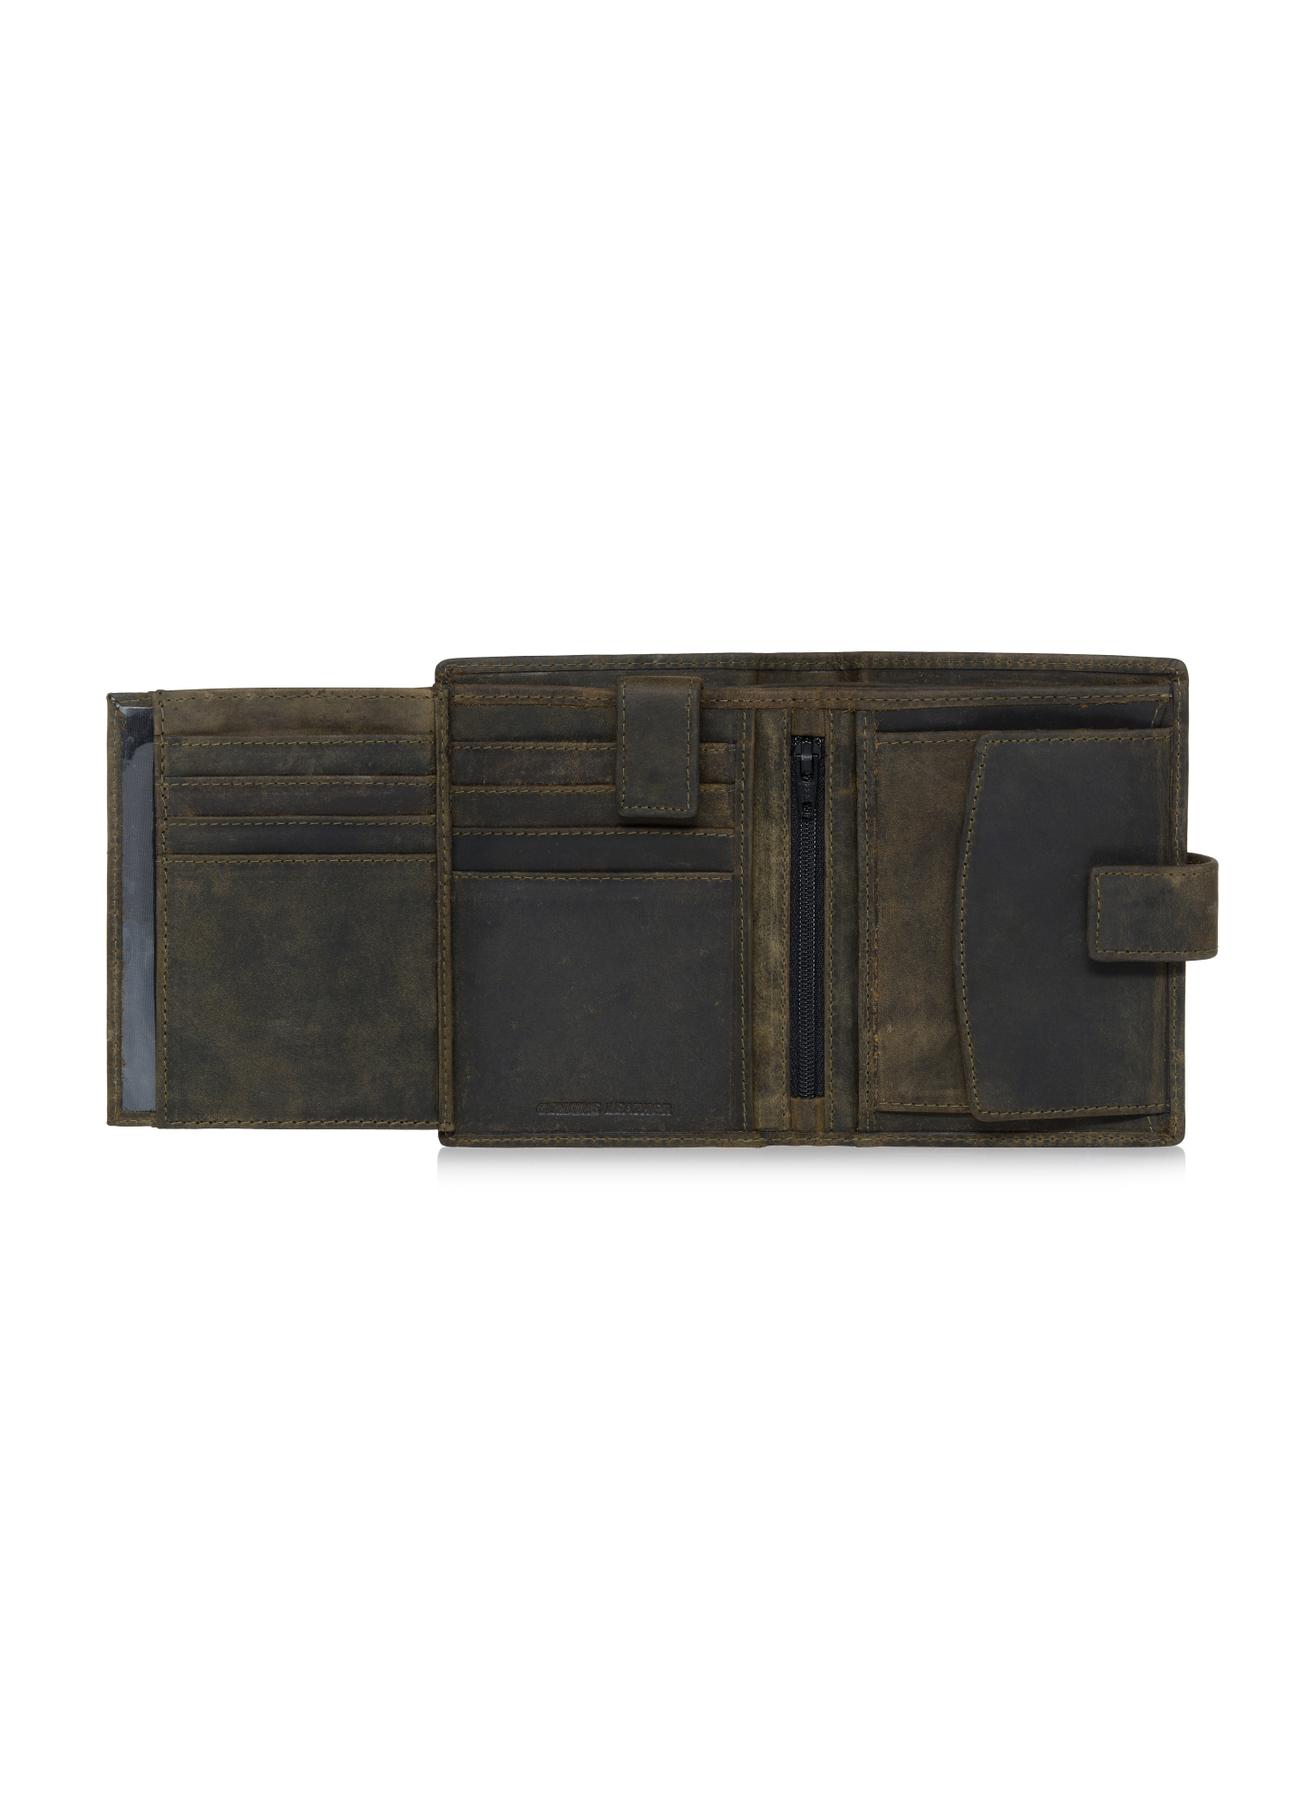 Khaki skórzany portfel męski PORMS-0543-54(W23)